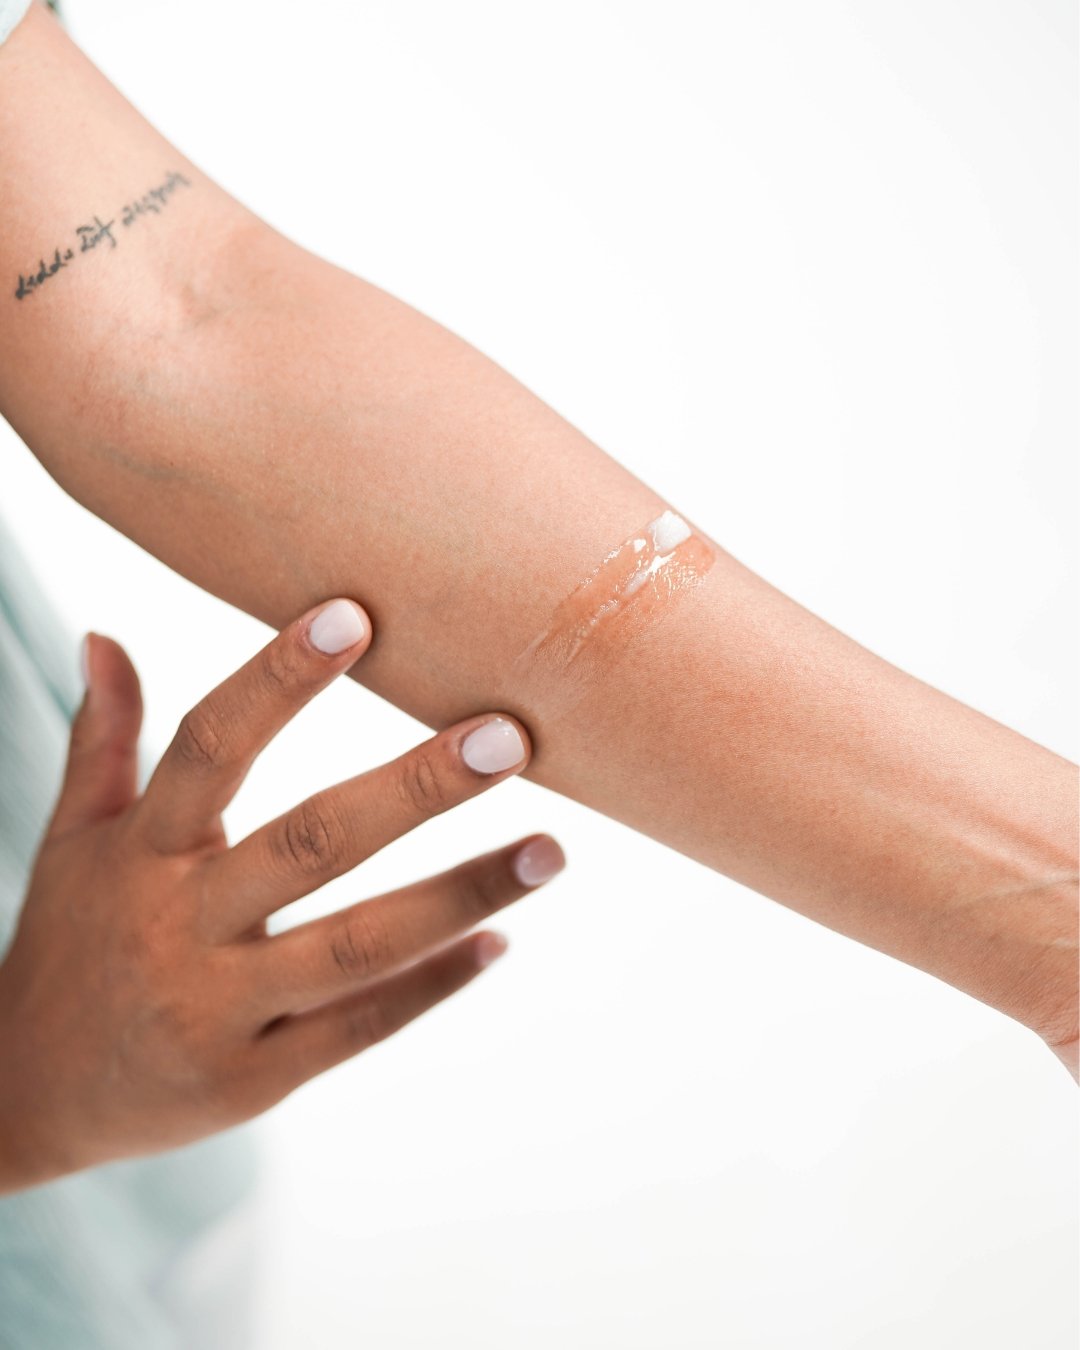 Anti Sunshine Fake Tattoo Full Arm Milk for Men Women~ | eBay